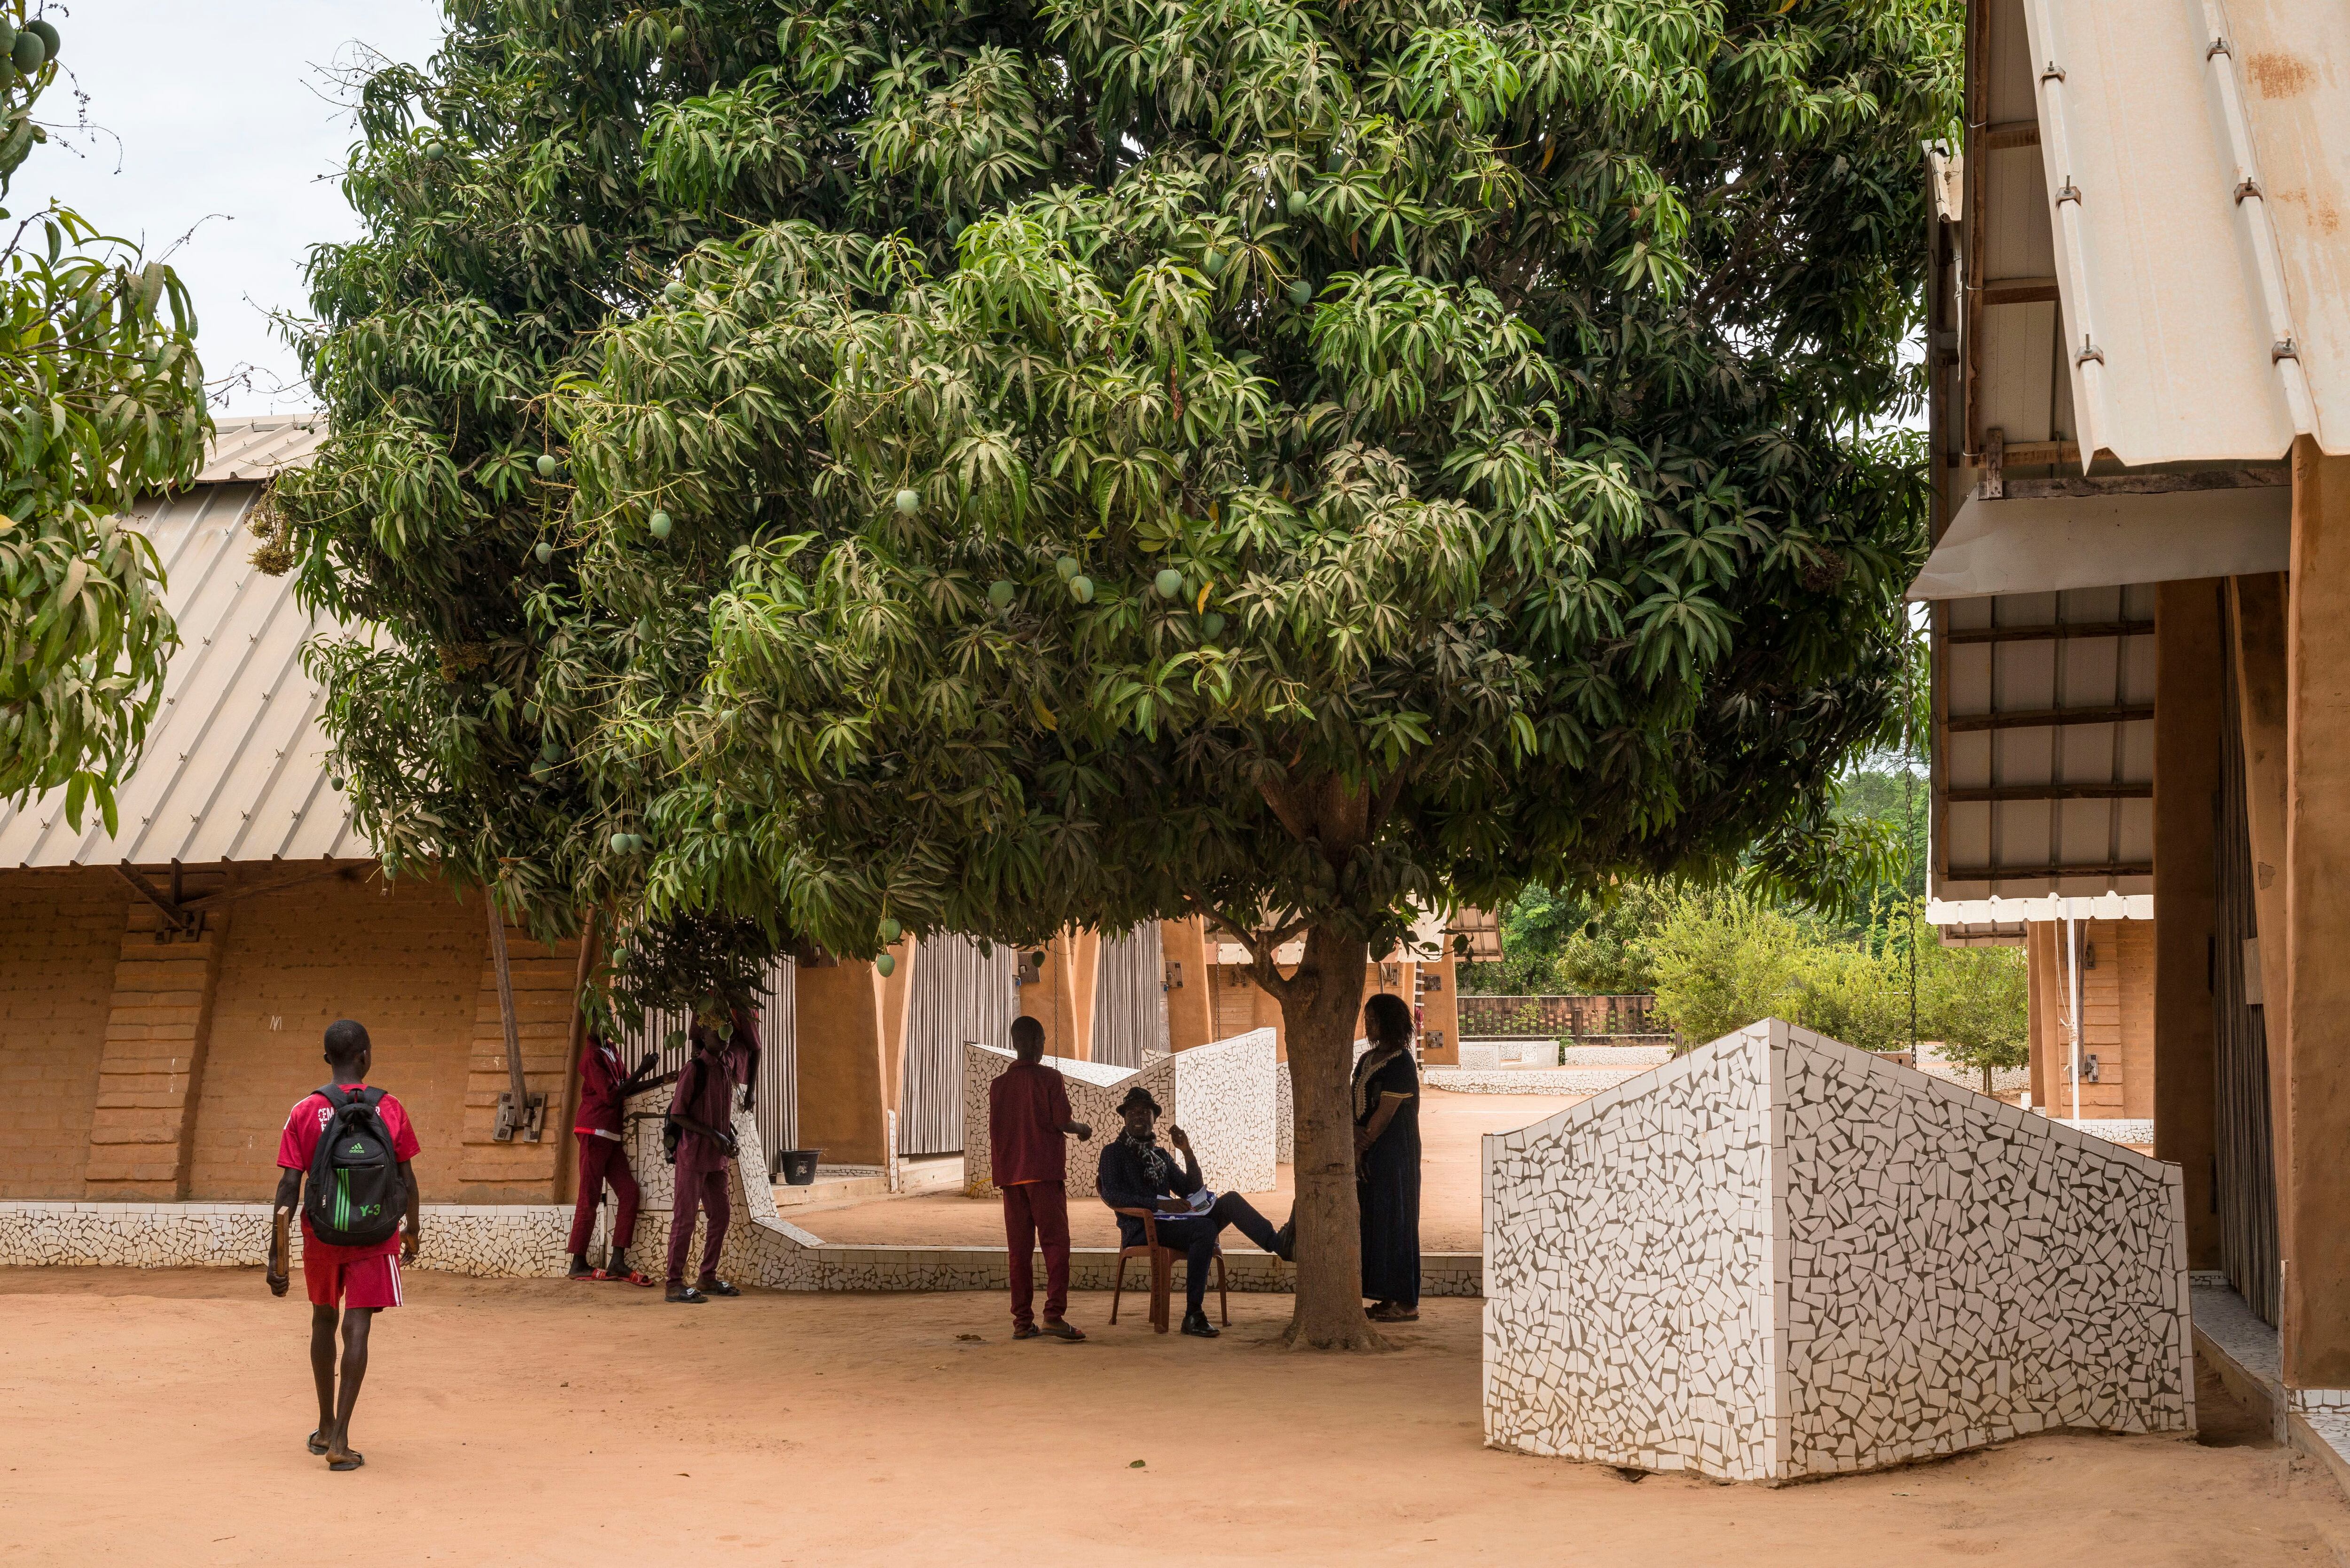 Esta escuela pública, que recibió el premio Aga Khan de arquitectura en 2022, es un modelo de arquitectura sostenible y adaptado a su entorno. En la imagen, un árbol de mango integrado en el complejo.